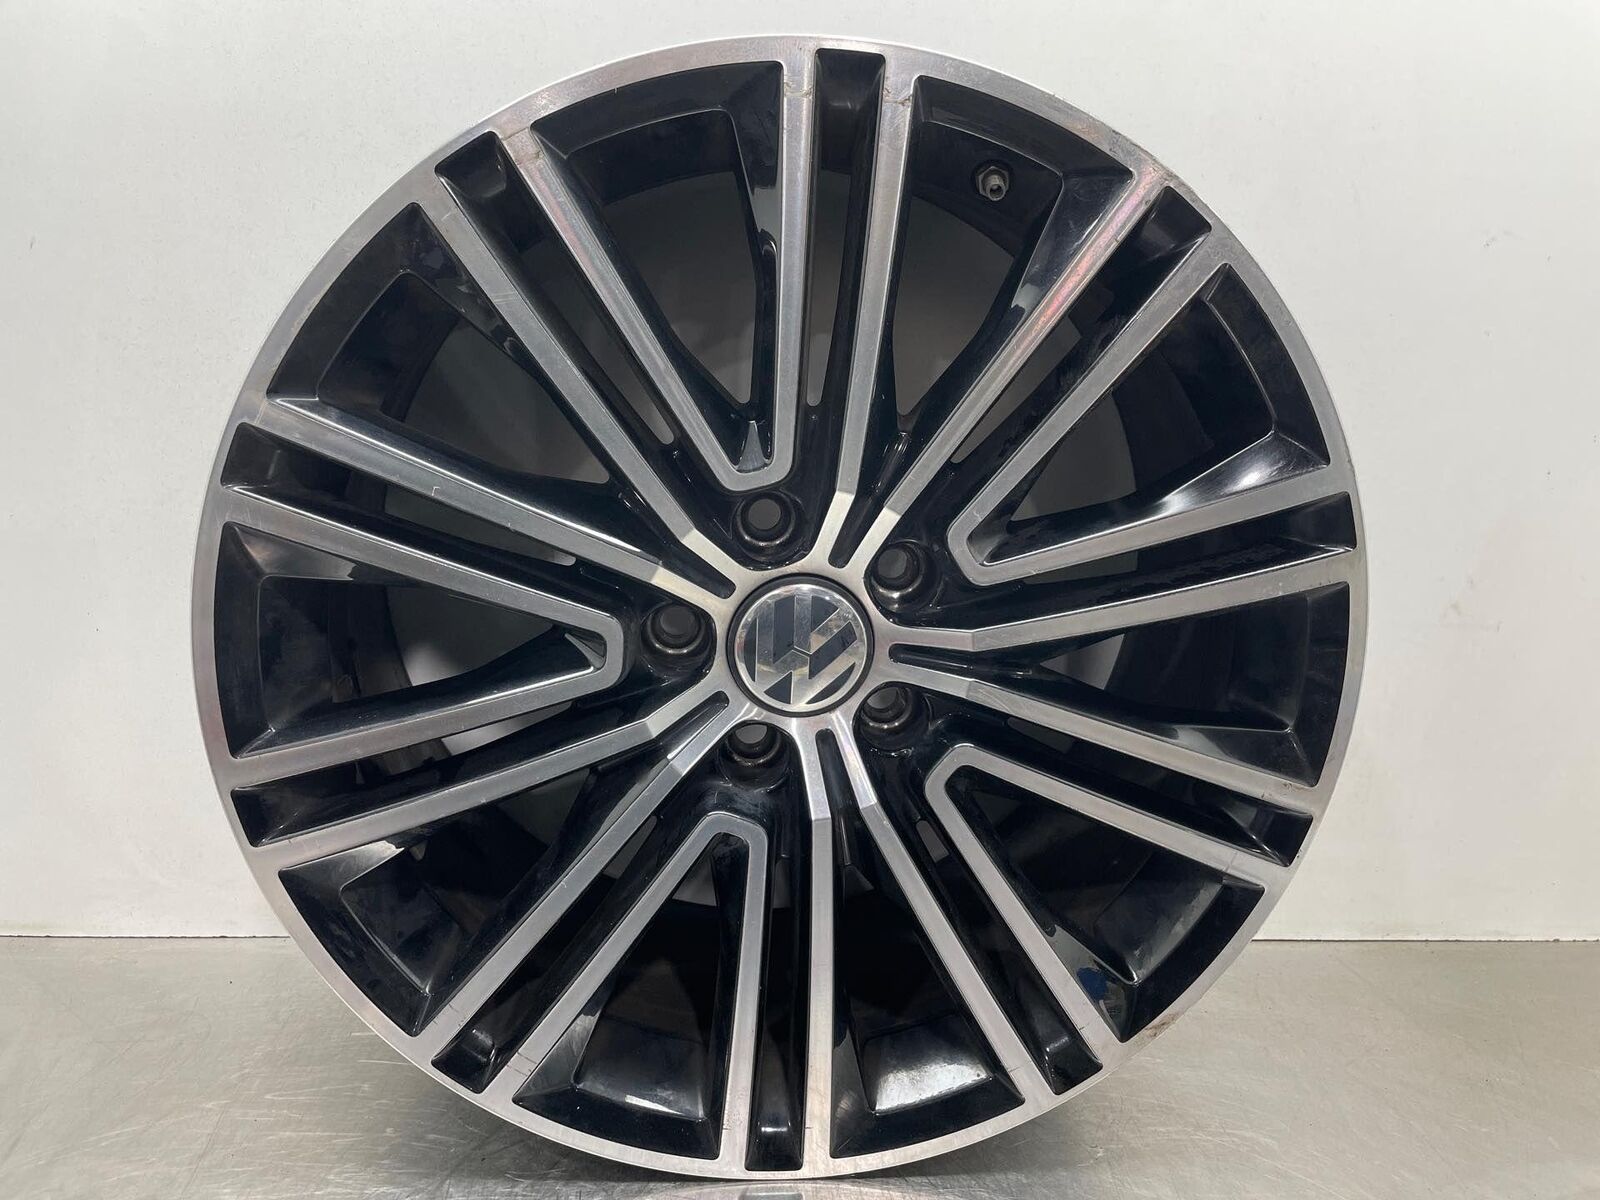 2015 VW Eos Wheel Rim 18x8 Alloy 5 Double Spoke *SCUFFED* Factory OEM 3aa601025L